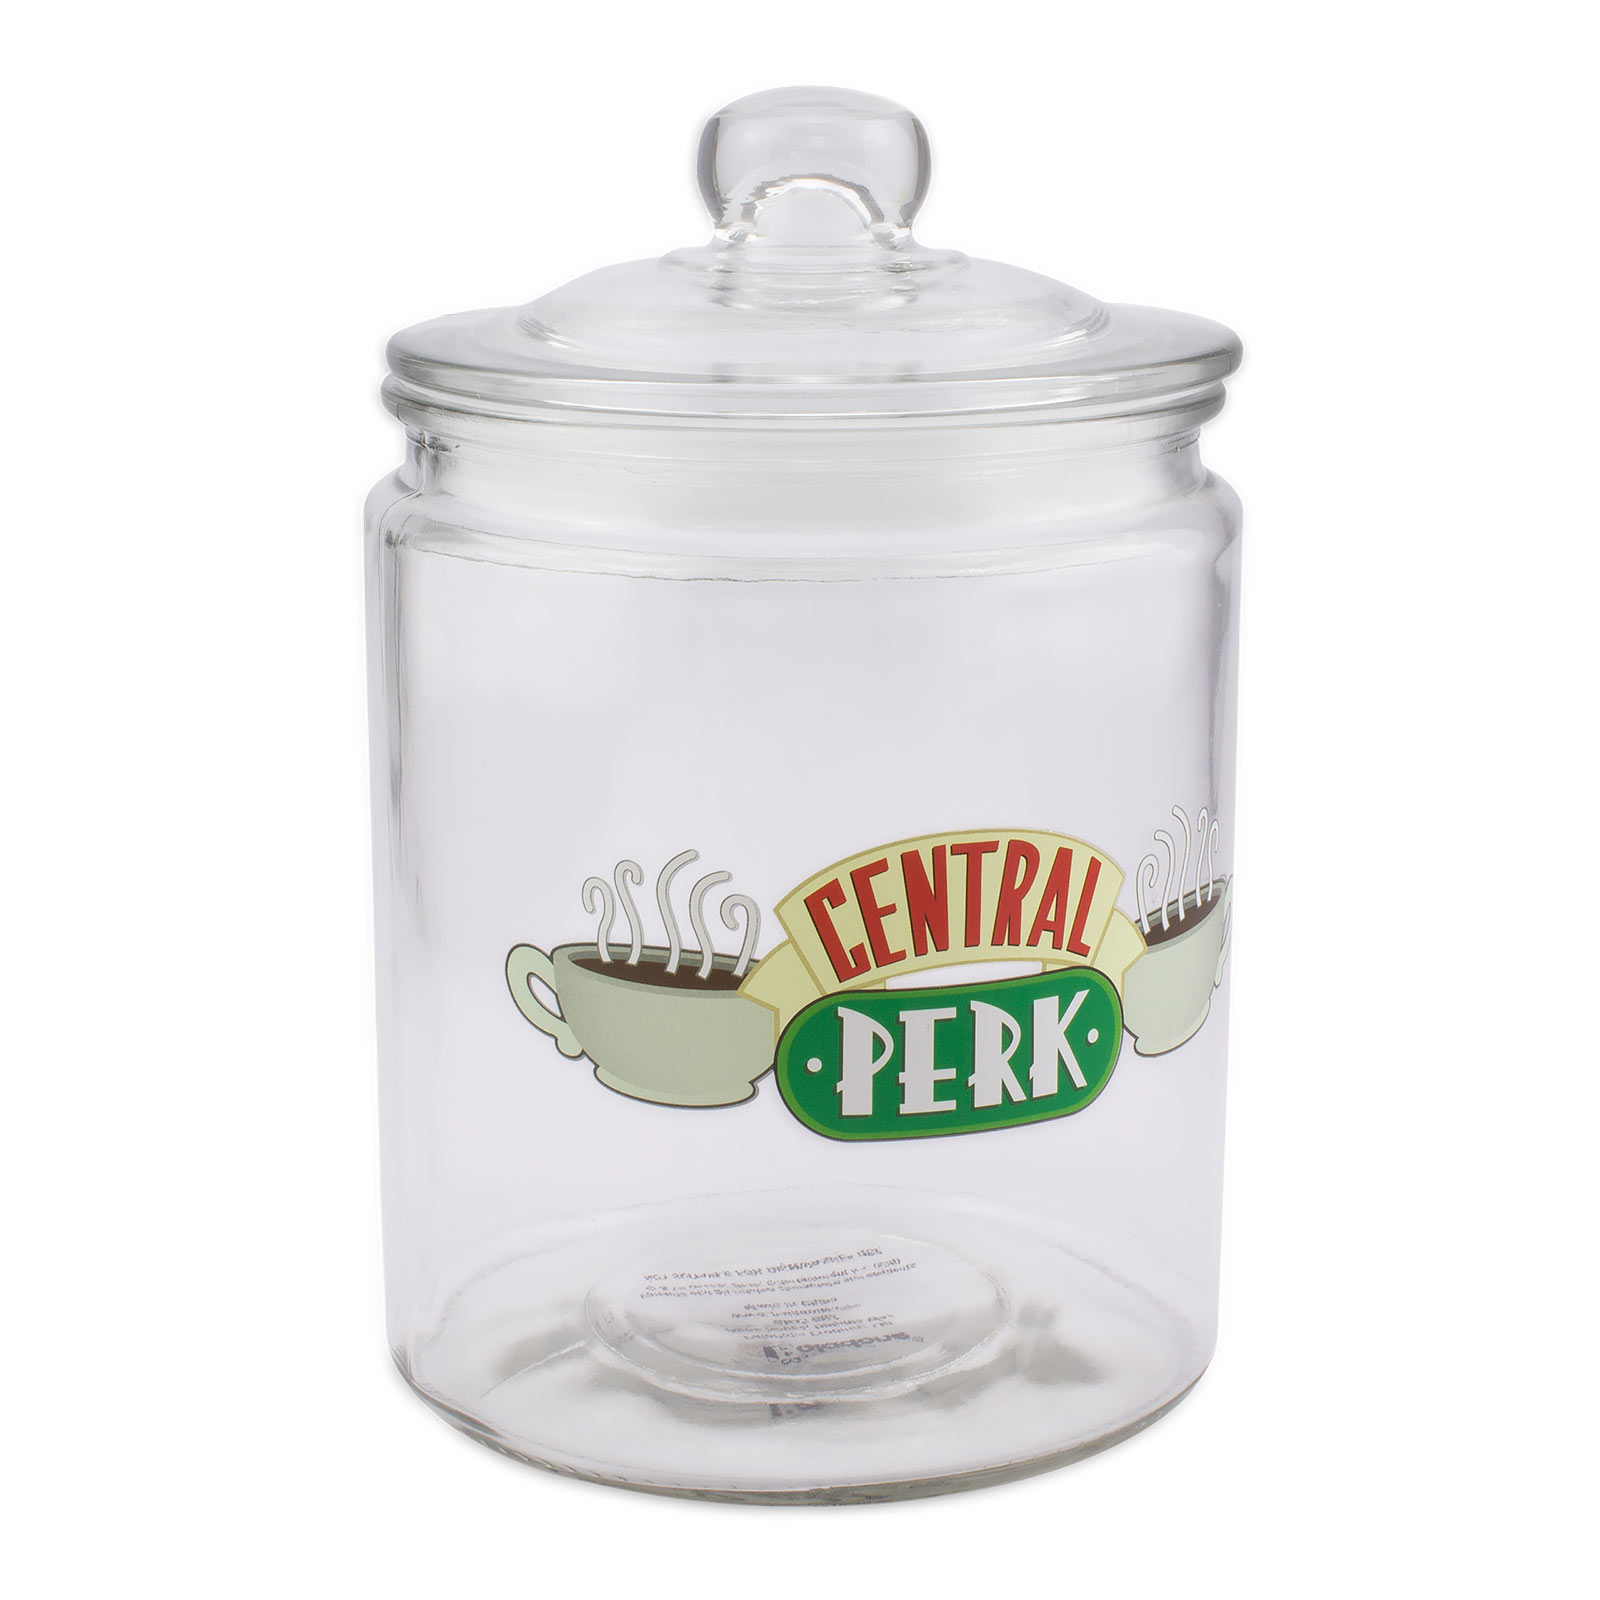 Friends - Central Perk boîte à biscuits avec couvercle verre